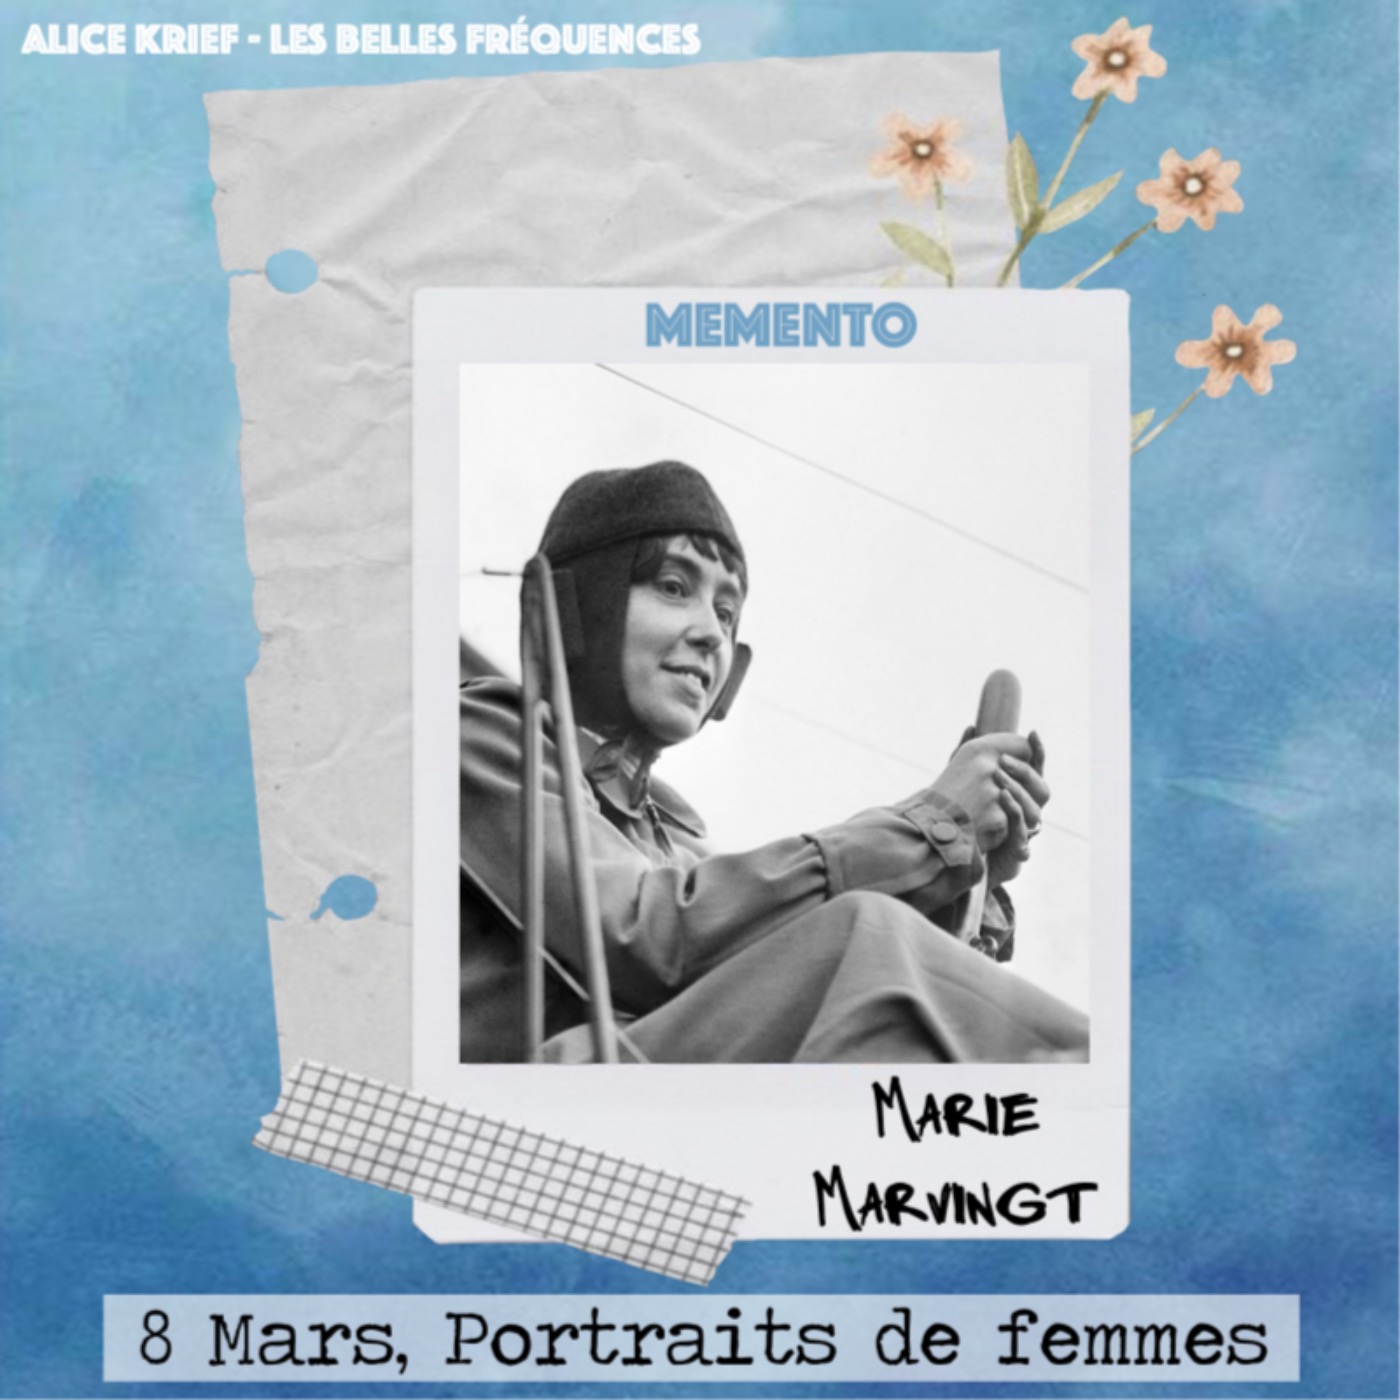 [8 MARS, PORTRAITS DE FEMMES] Marie Marvingt - Je suis célèbre pour ma polyvalence et mes nombreux talents sportifs.